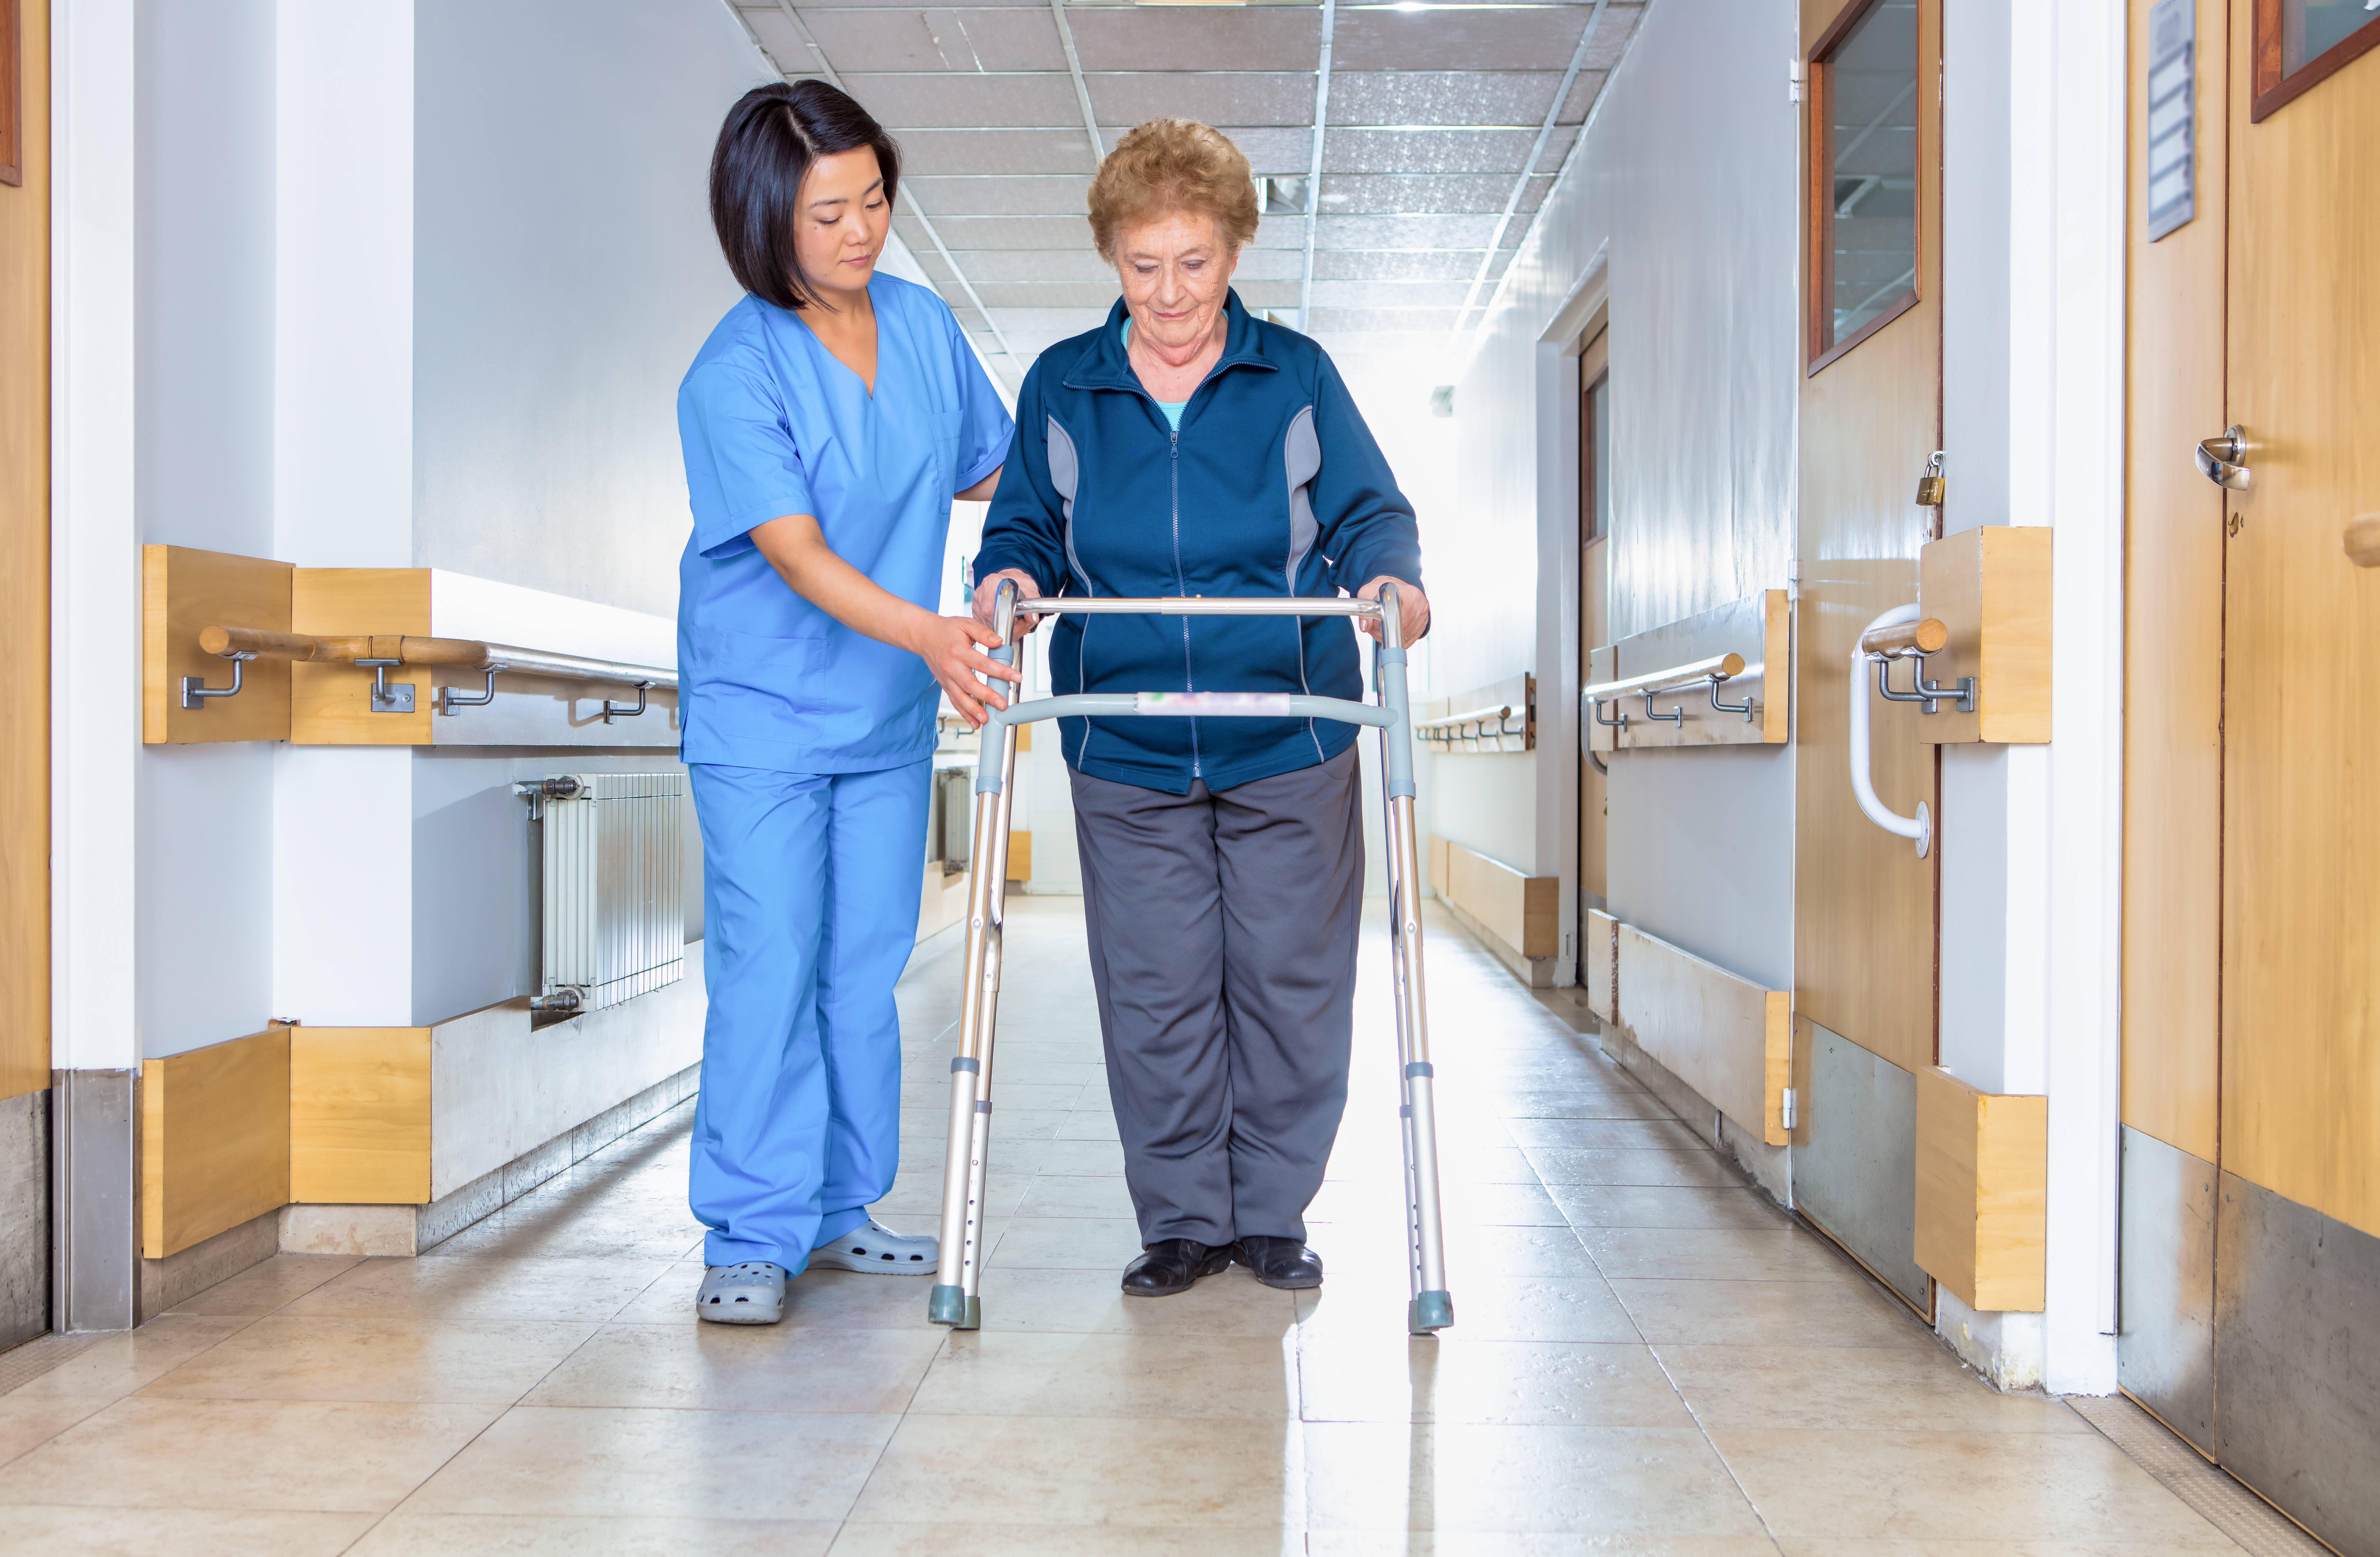 Une professionnelle de santé en tenue de travail aide une aînée à se déplacer en déambulateur dans le couloir de l’hôpital.